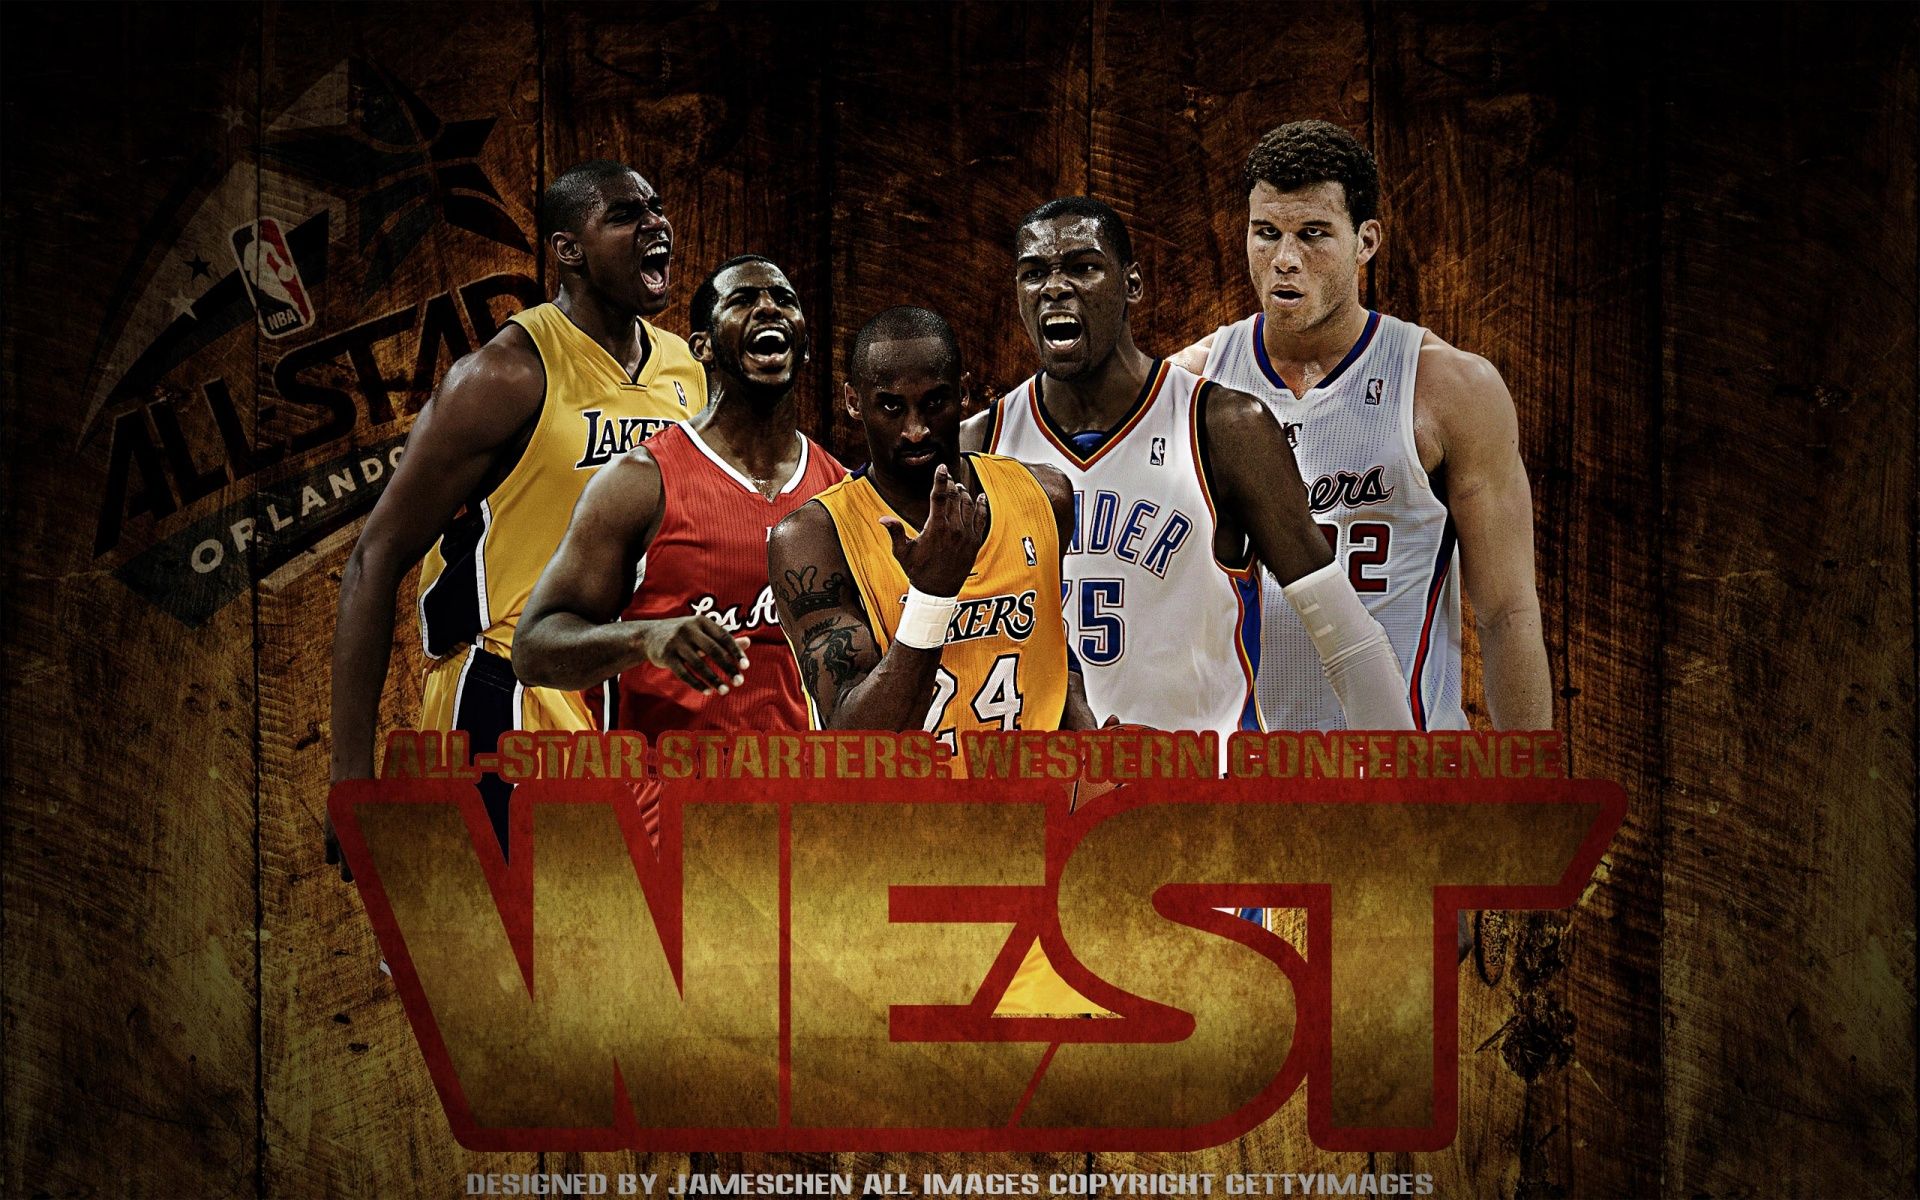 Kobe Bryant Michael Jordan Lebron James Wallpaper Poster